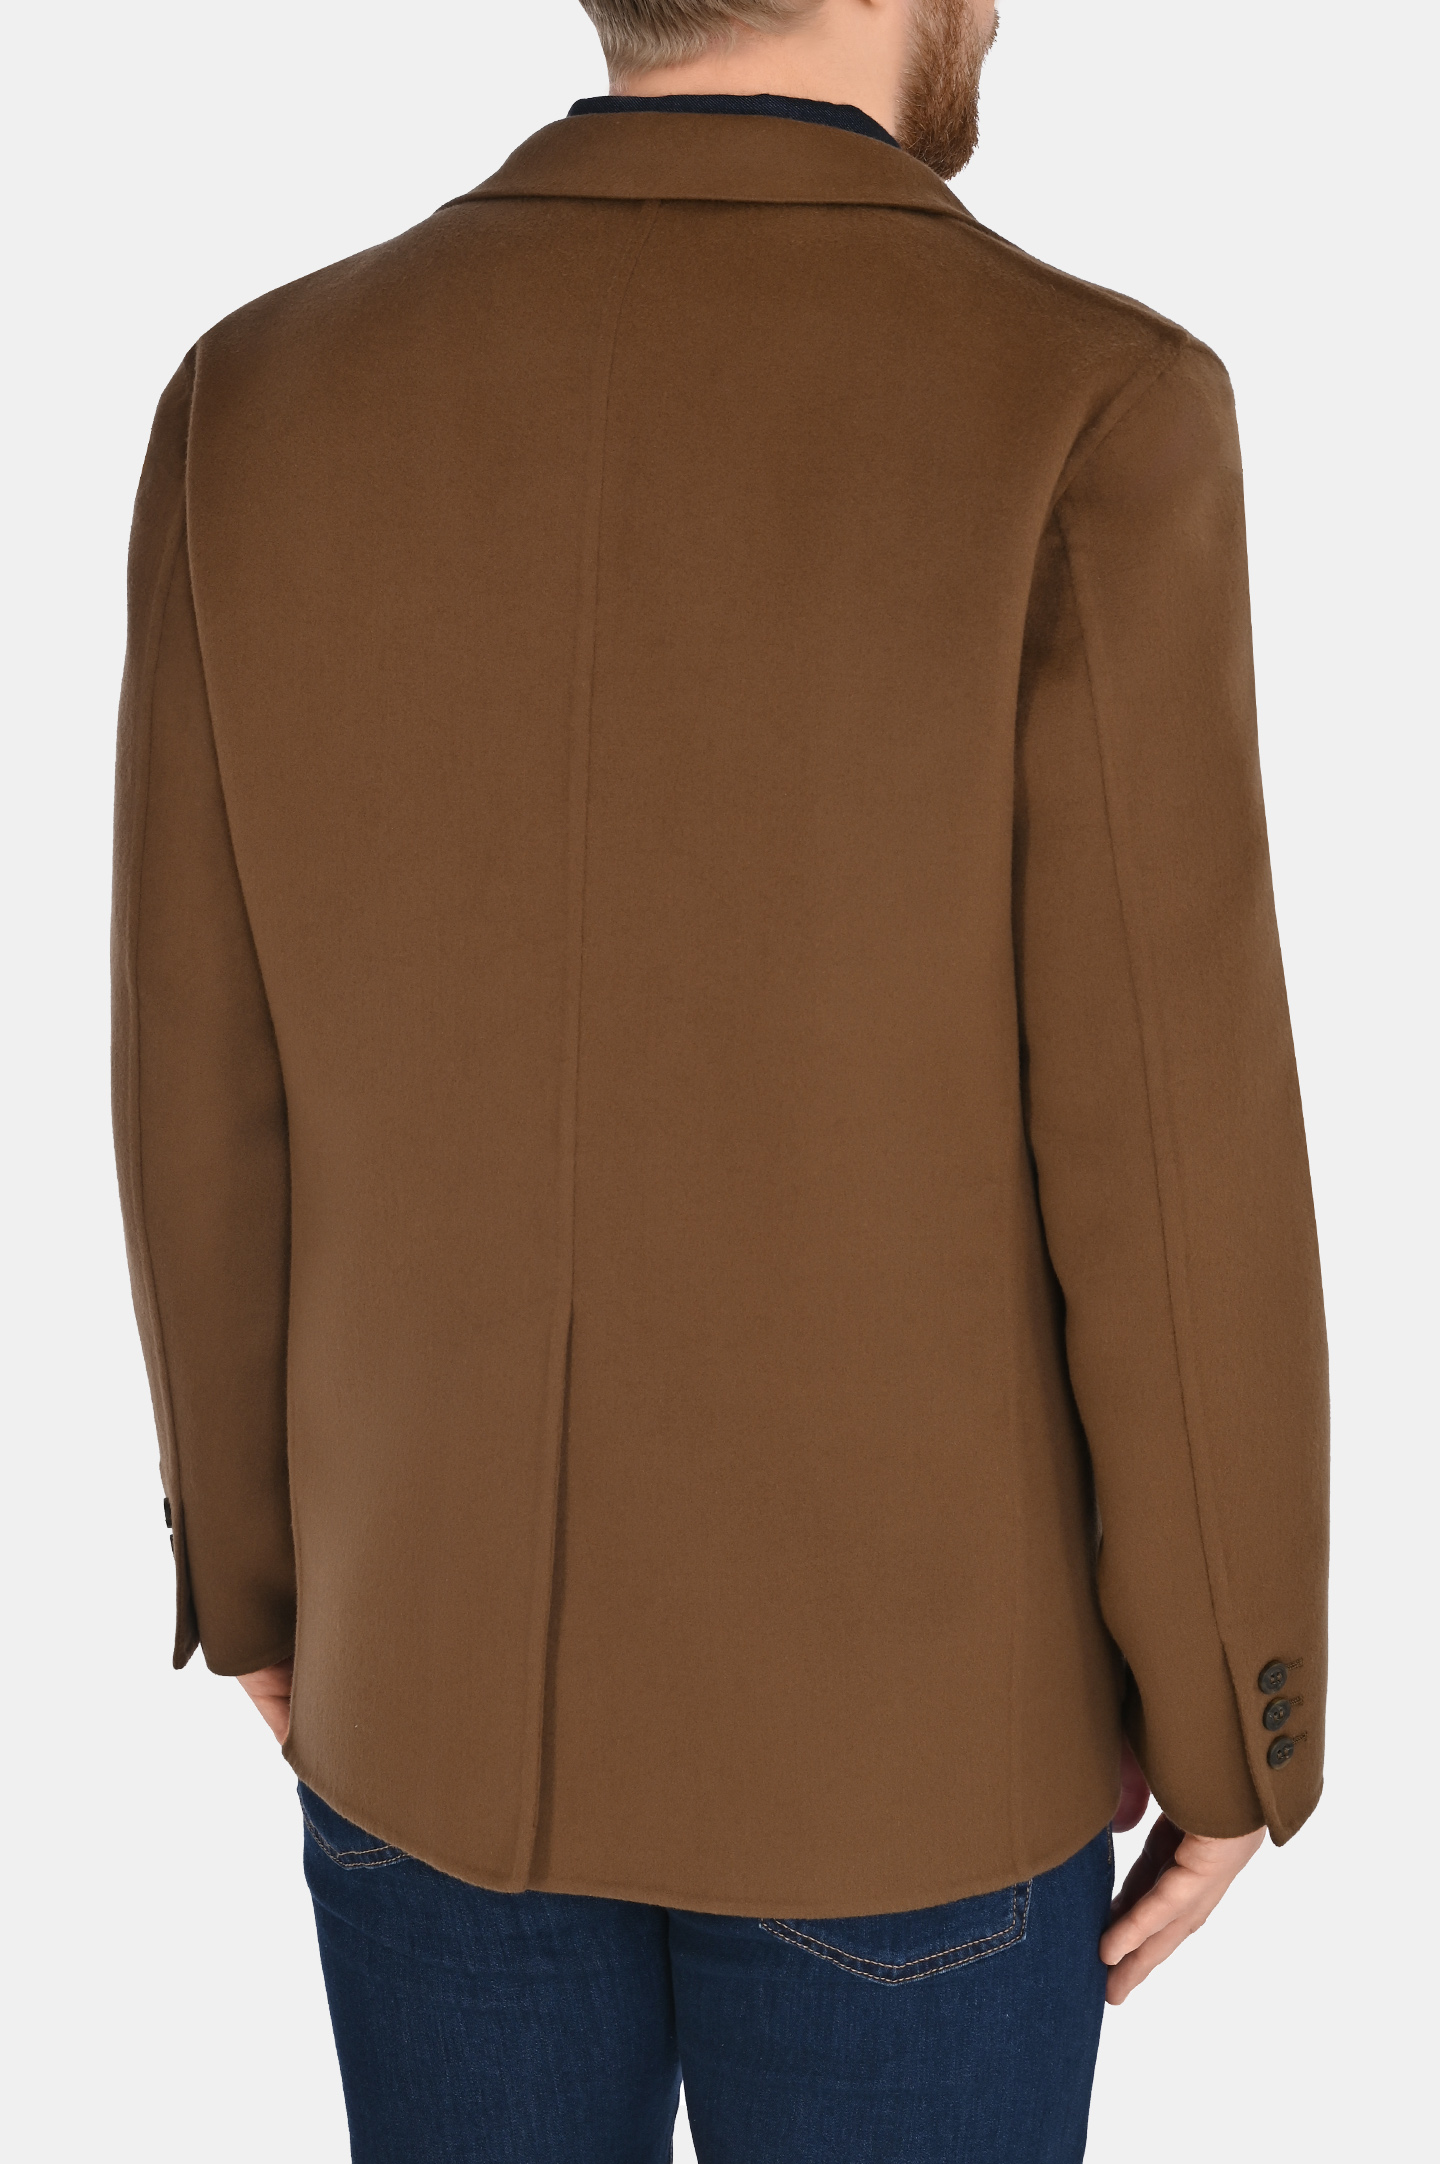 Пиджак CANALI SG02870 O30440, цвет: Коричневый, Мужской